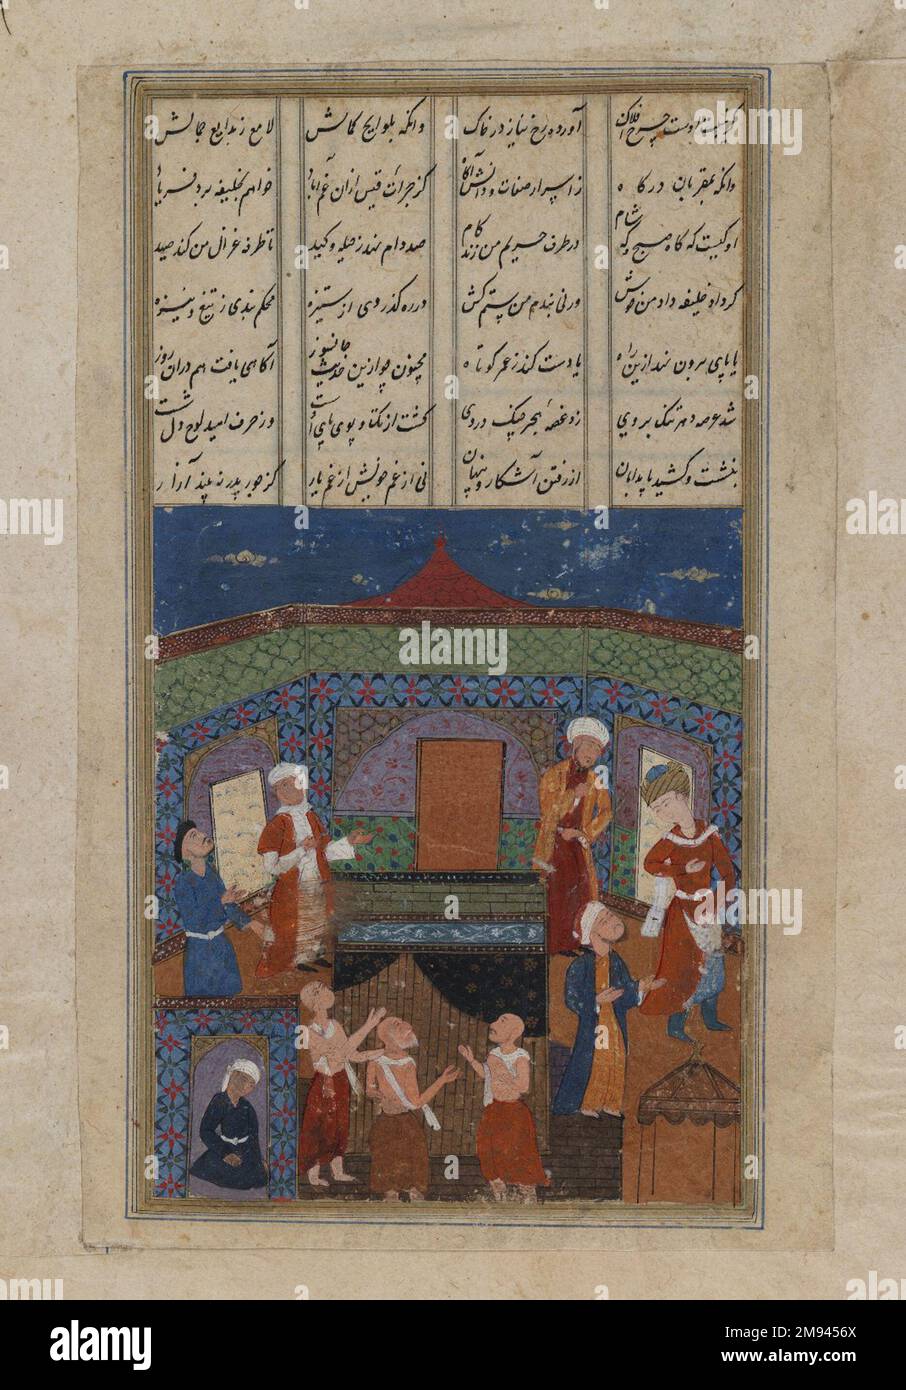 Miniatur mit acht stehenden Figuren und einer knienden Miniatur mit acht stehenden Figuren und einer knienden Figur im 17. Jahrhundert. Tinte auf Papier, 6 1/2 x 9 3/4in. (16,5 x 24,8cm). Kunst der islamischen Welt 17. Jahrhundert Stockfoto